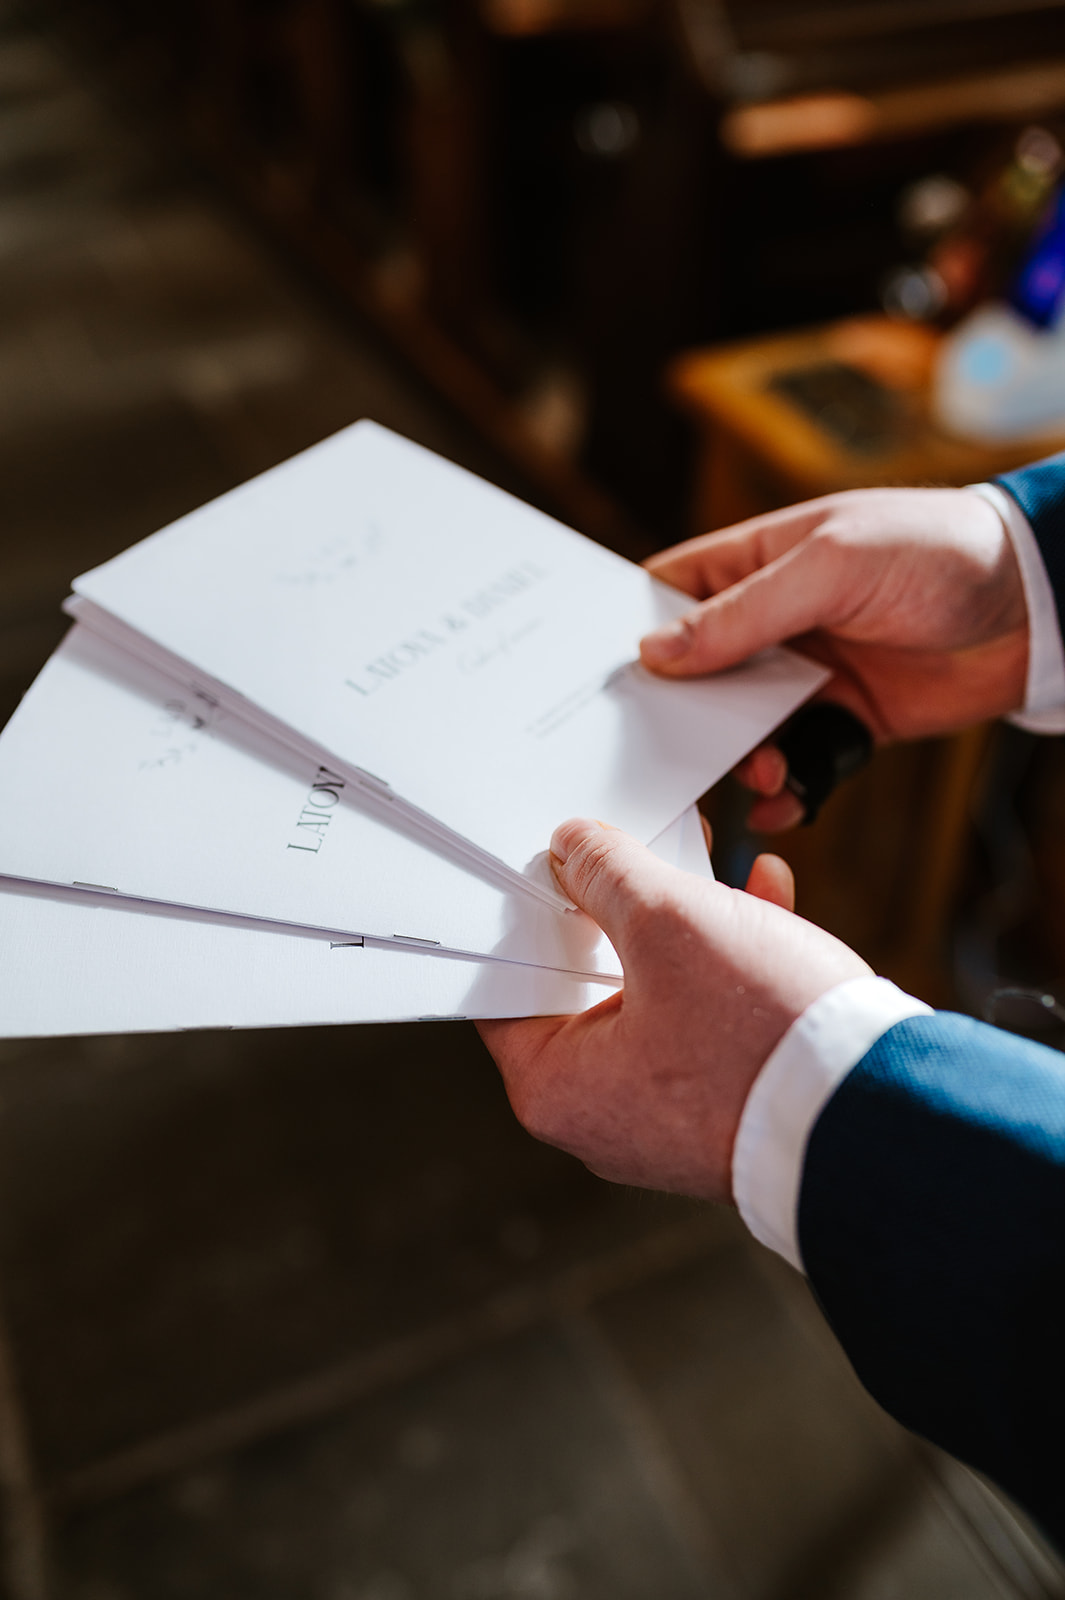 Wedding order details held in hands